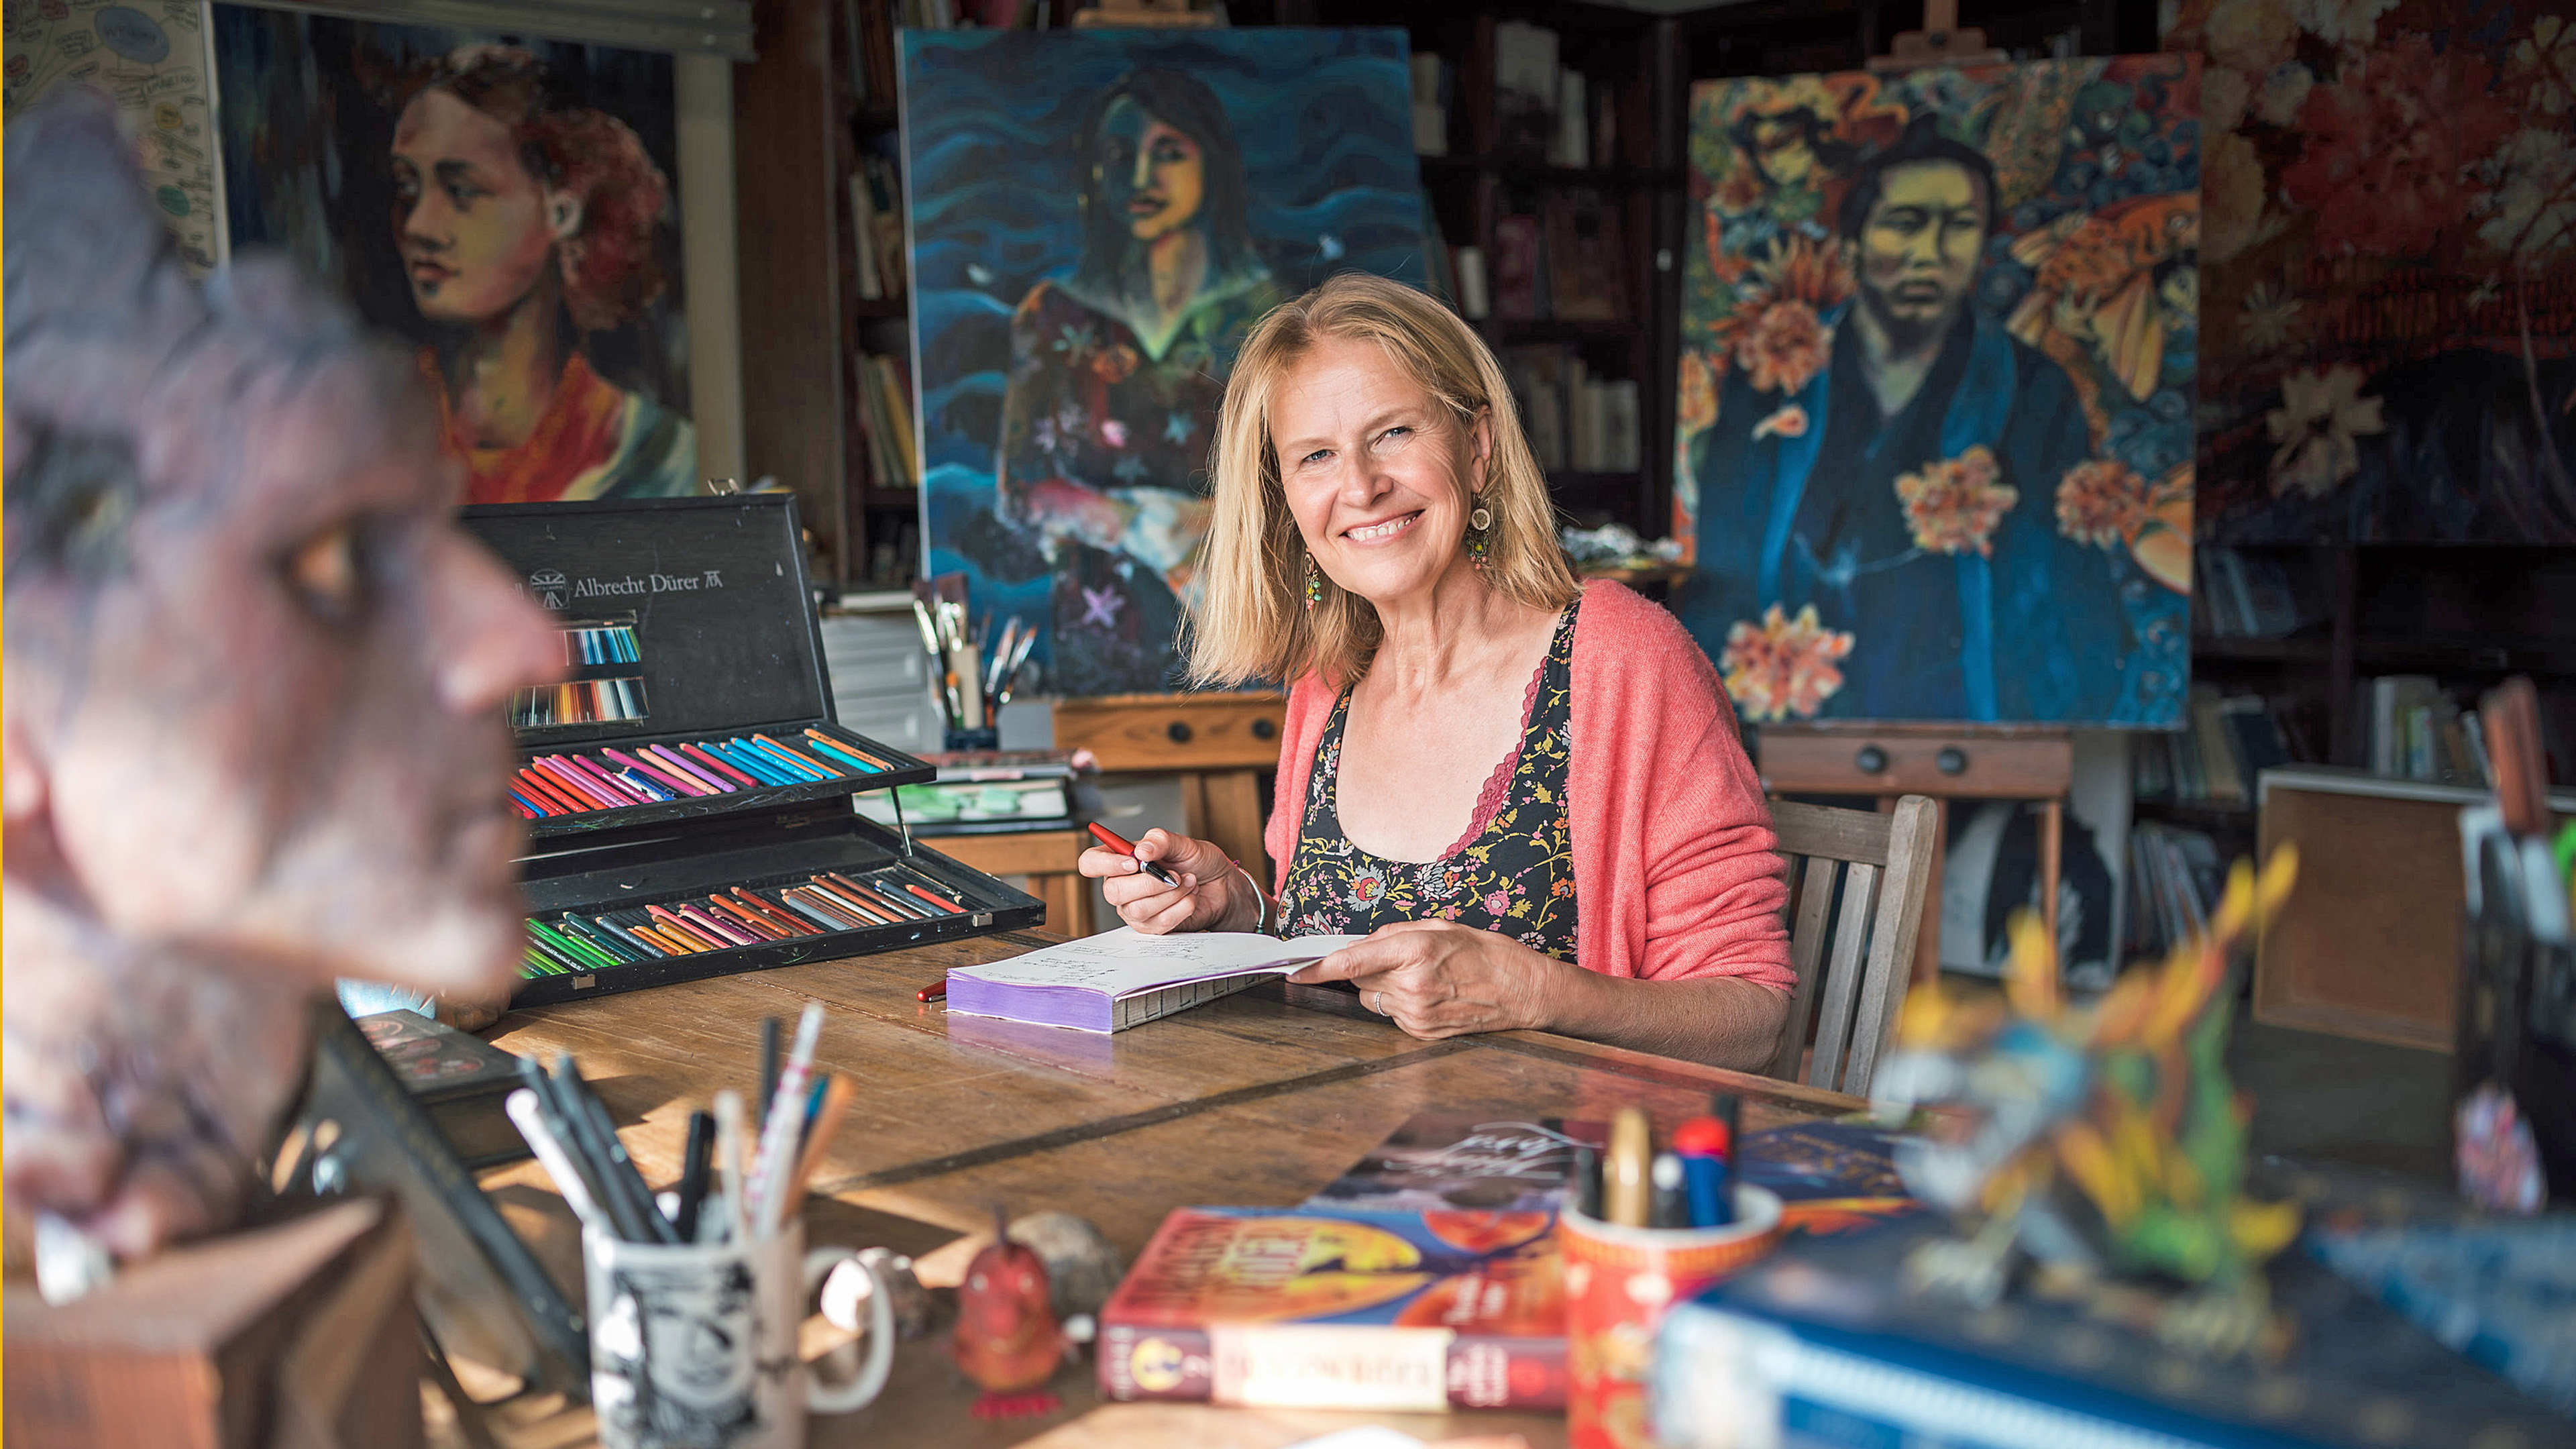 26.07.2019, USA, Malibu: ARCHIV - Die Autorin Cornelia Funke sitzt am Schreibtisch in ihrem Haus in Malibu.